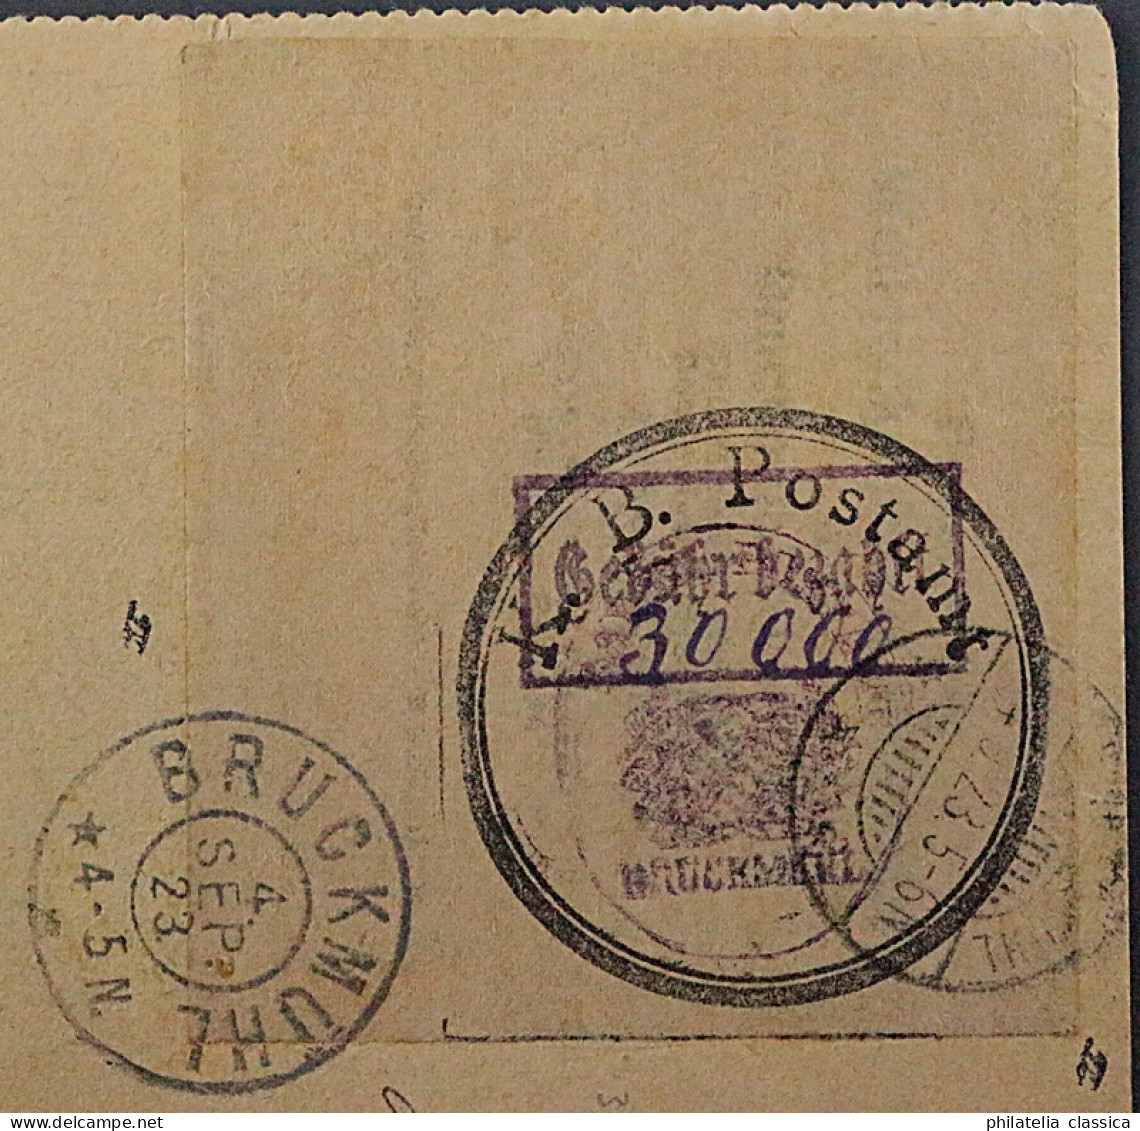 1923, BRUCKMÜHL 1, Postverschlußzettel 30.000 Mk. Auf Postkarte, SELTEN, 1000,-€ - 1922-1923 Lokalausgaben